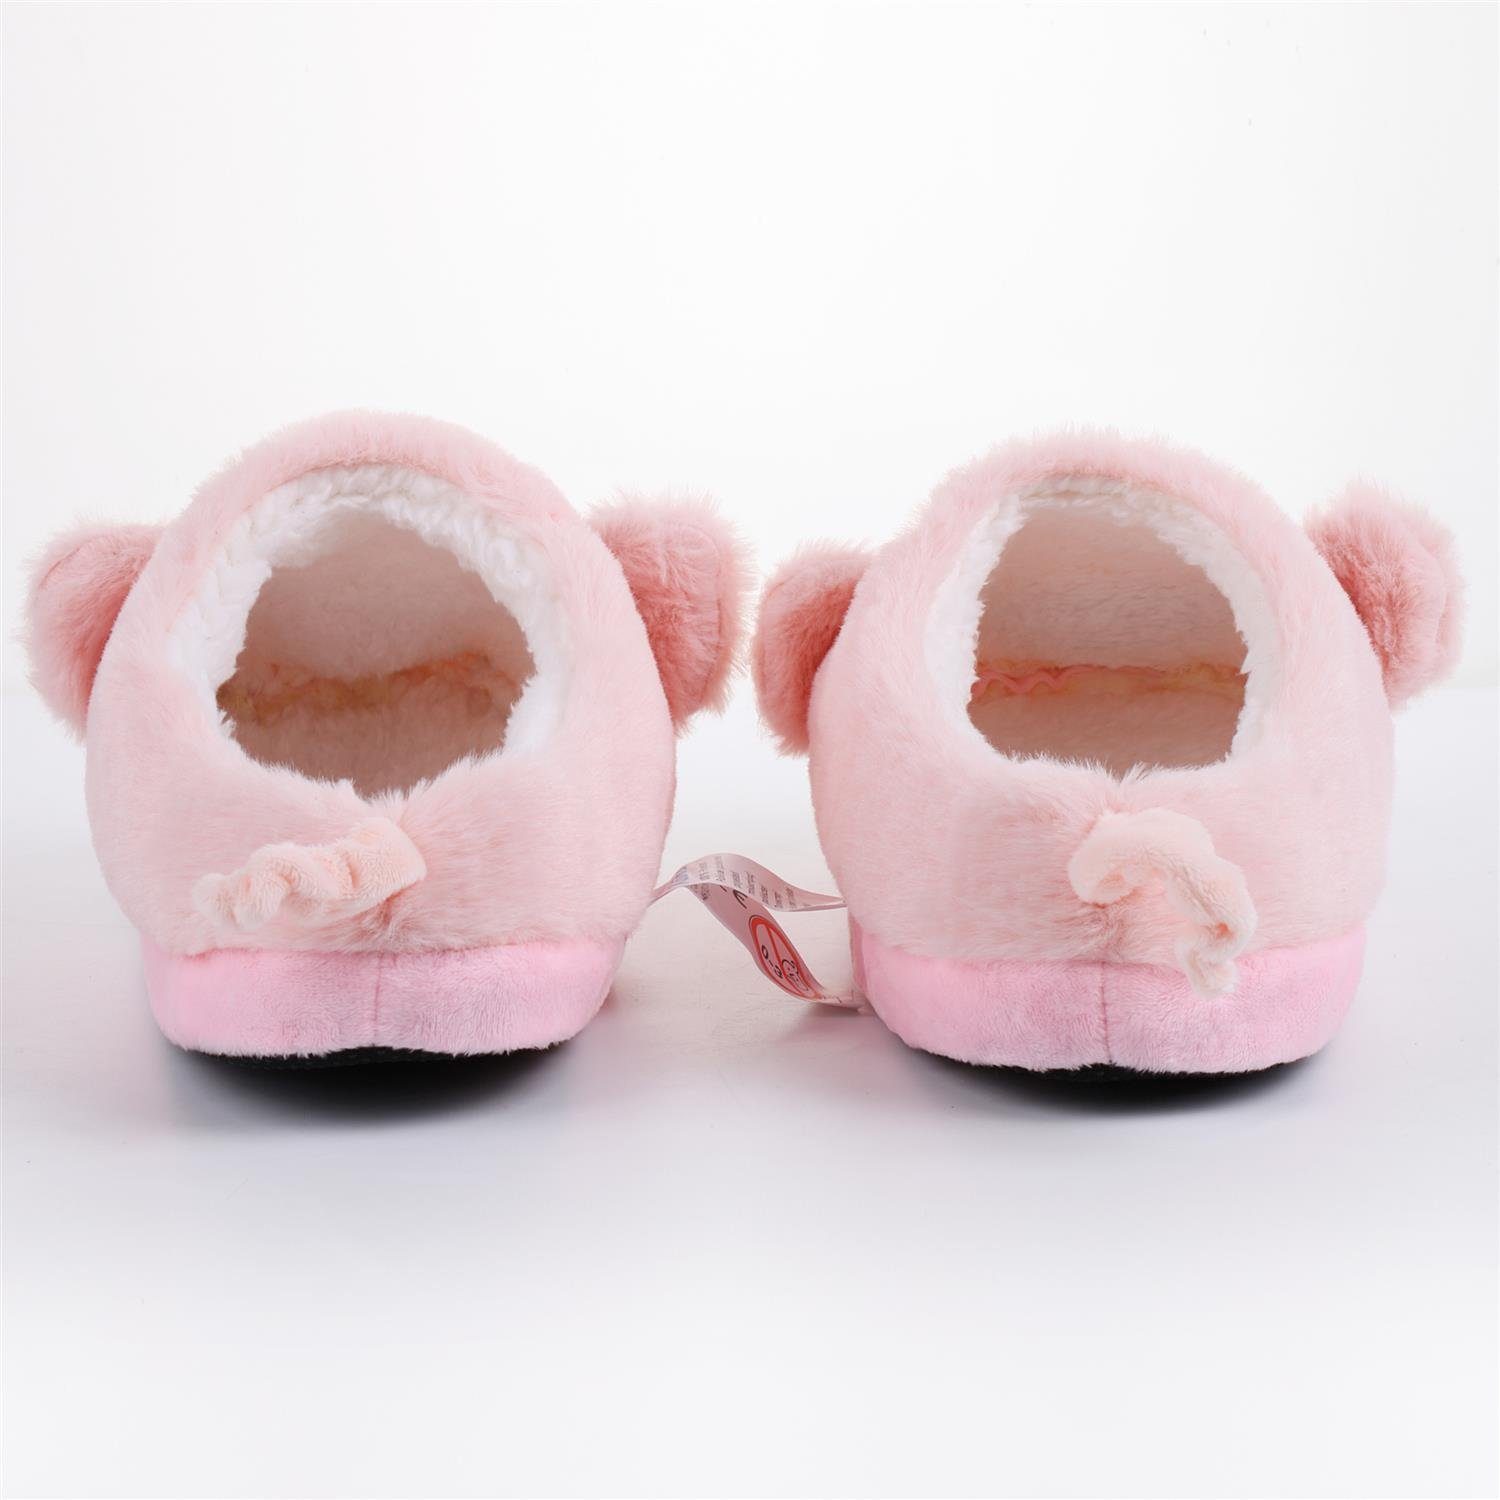 Katara Lama, Schweinchen Plüsch Tier Kuschelige rosa (Schwein, (hinten Bär) Pantoffeln Hausschuhe geschlossen)